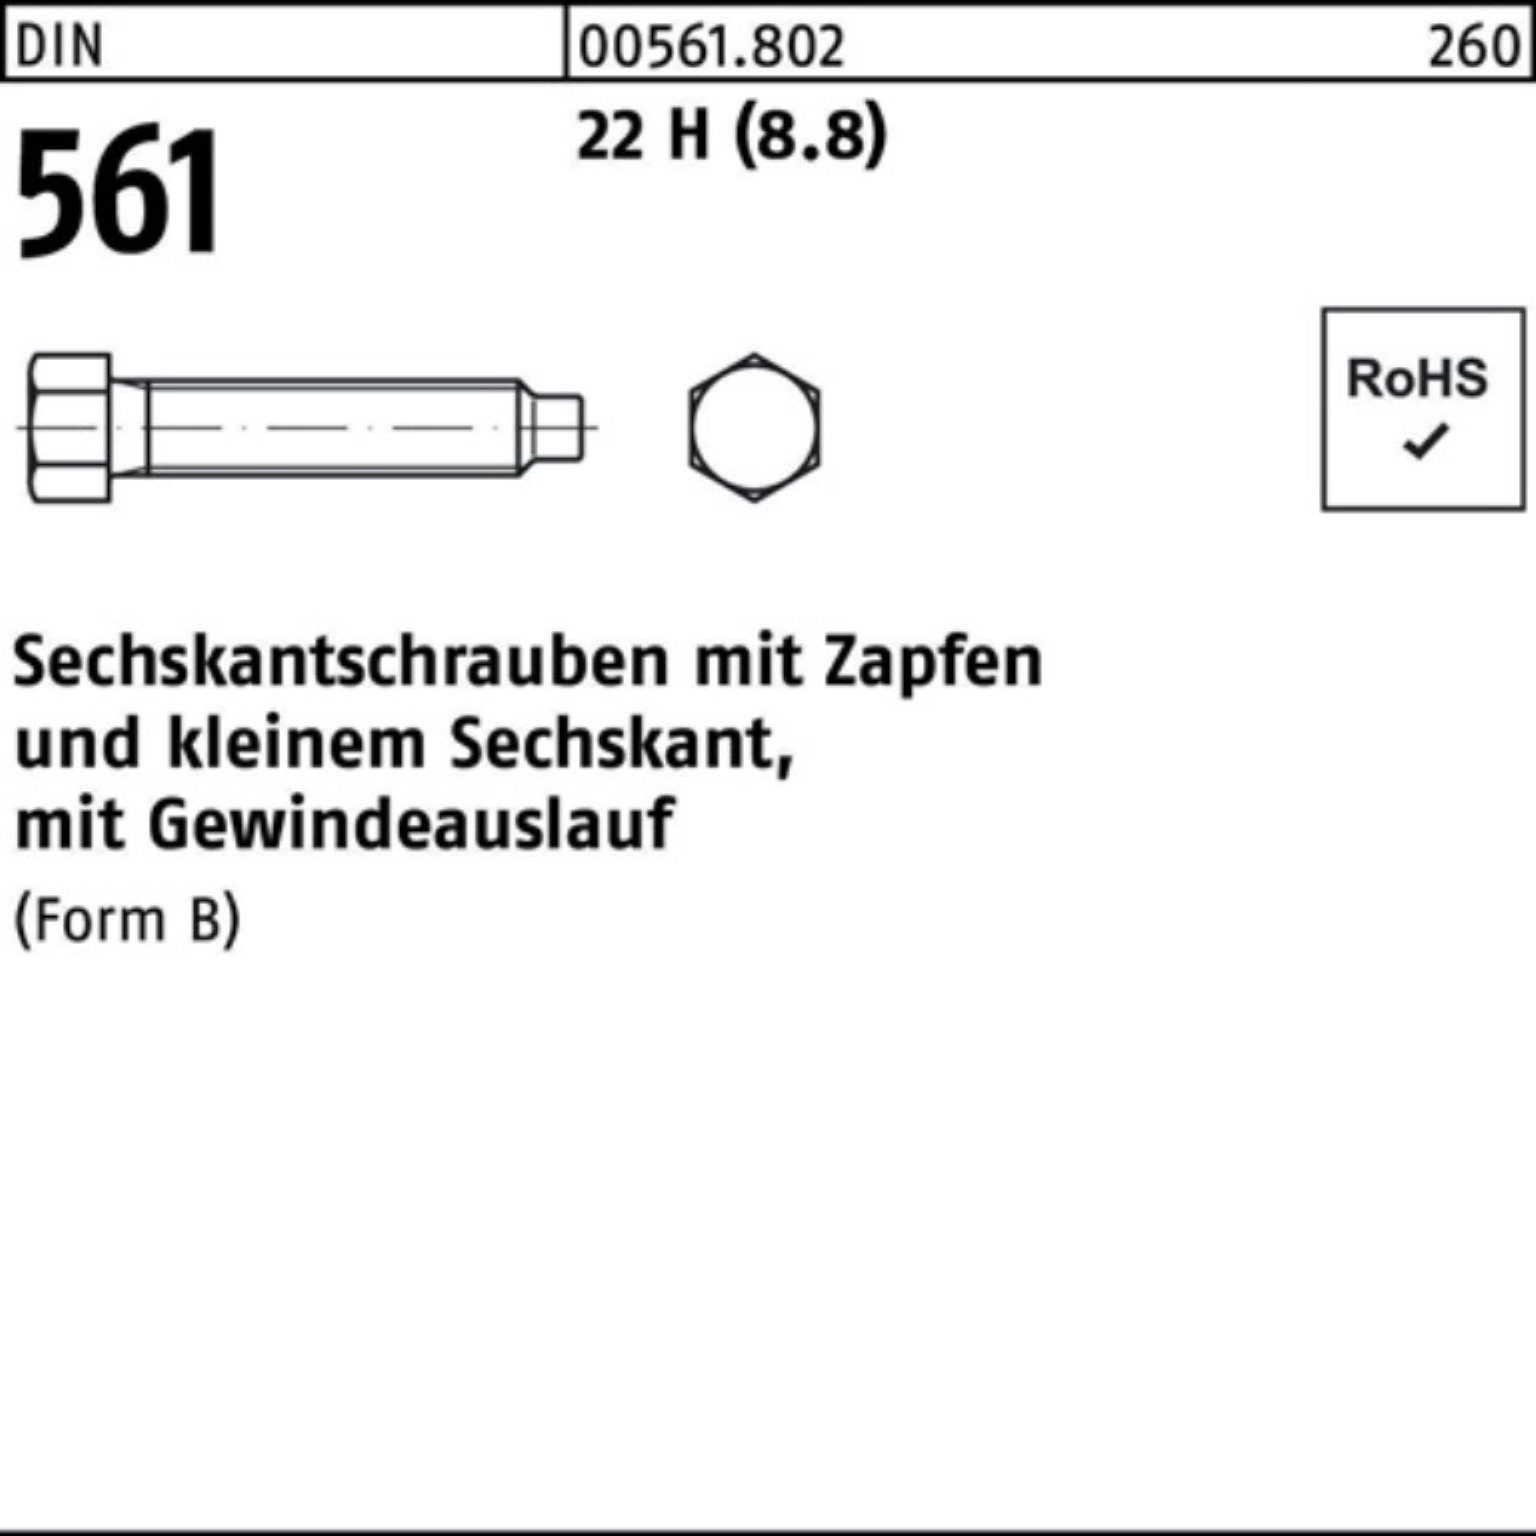 Reyher Sechskantschraube St 90 (8.8) H DIN Zapfen BM 22 Sechskantschraube 561 Pack 16x 10 100er